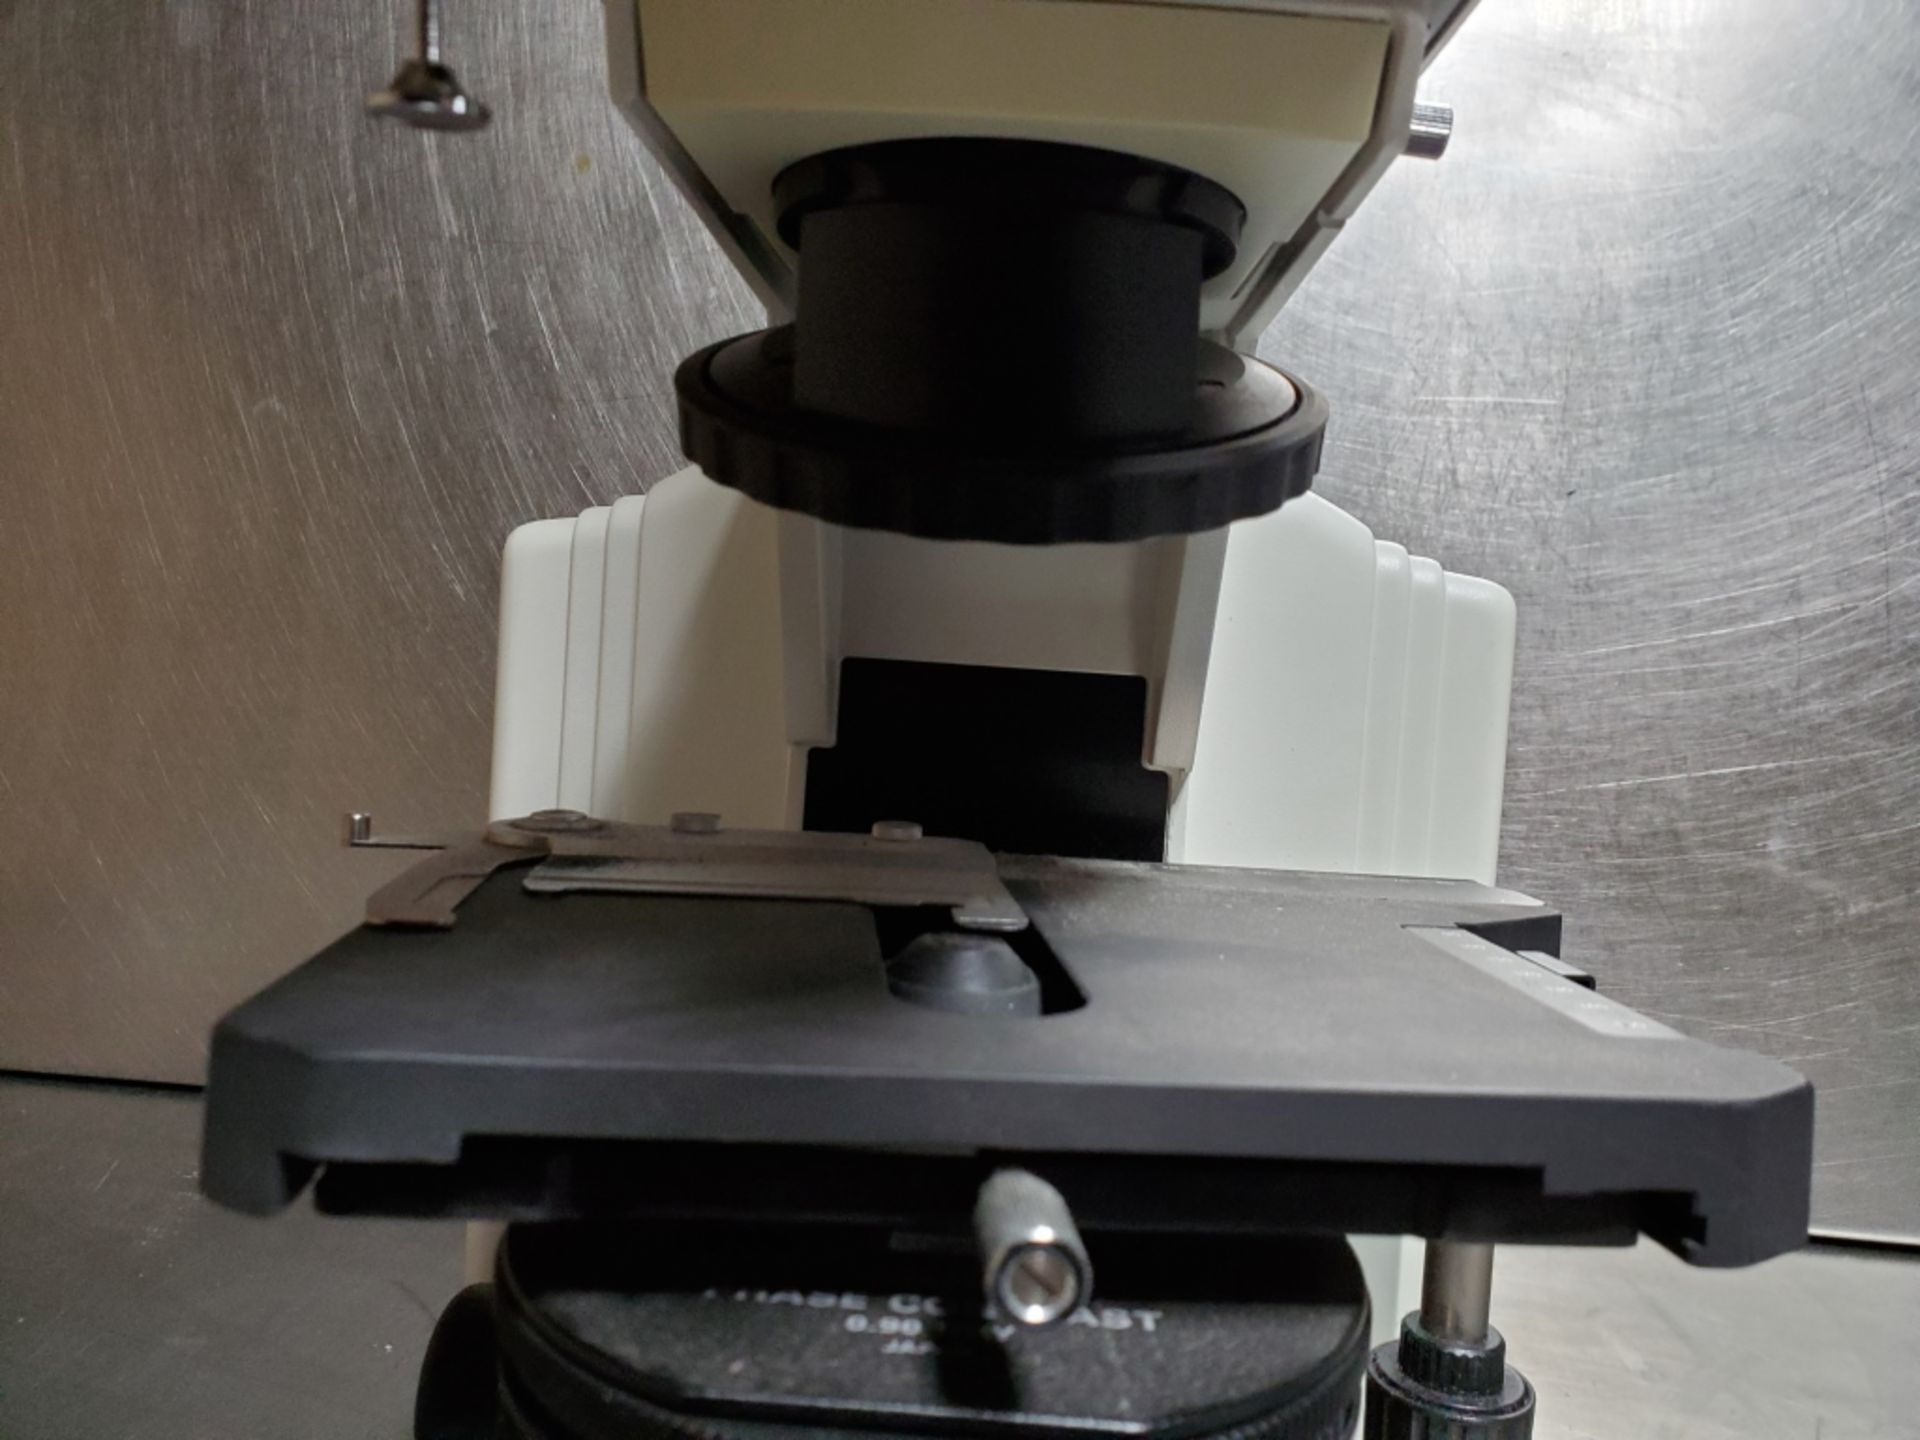 Nikon Eclipse Model E600 Microscope - Image 11 of 15